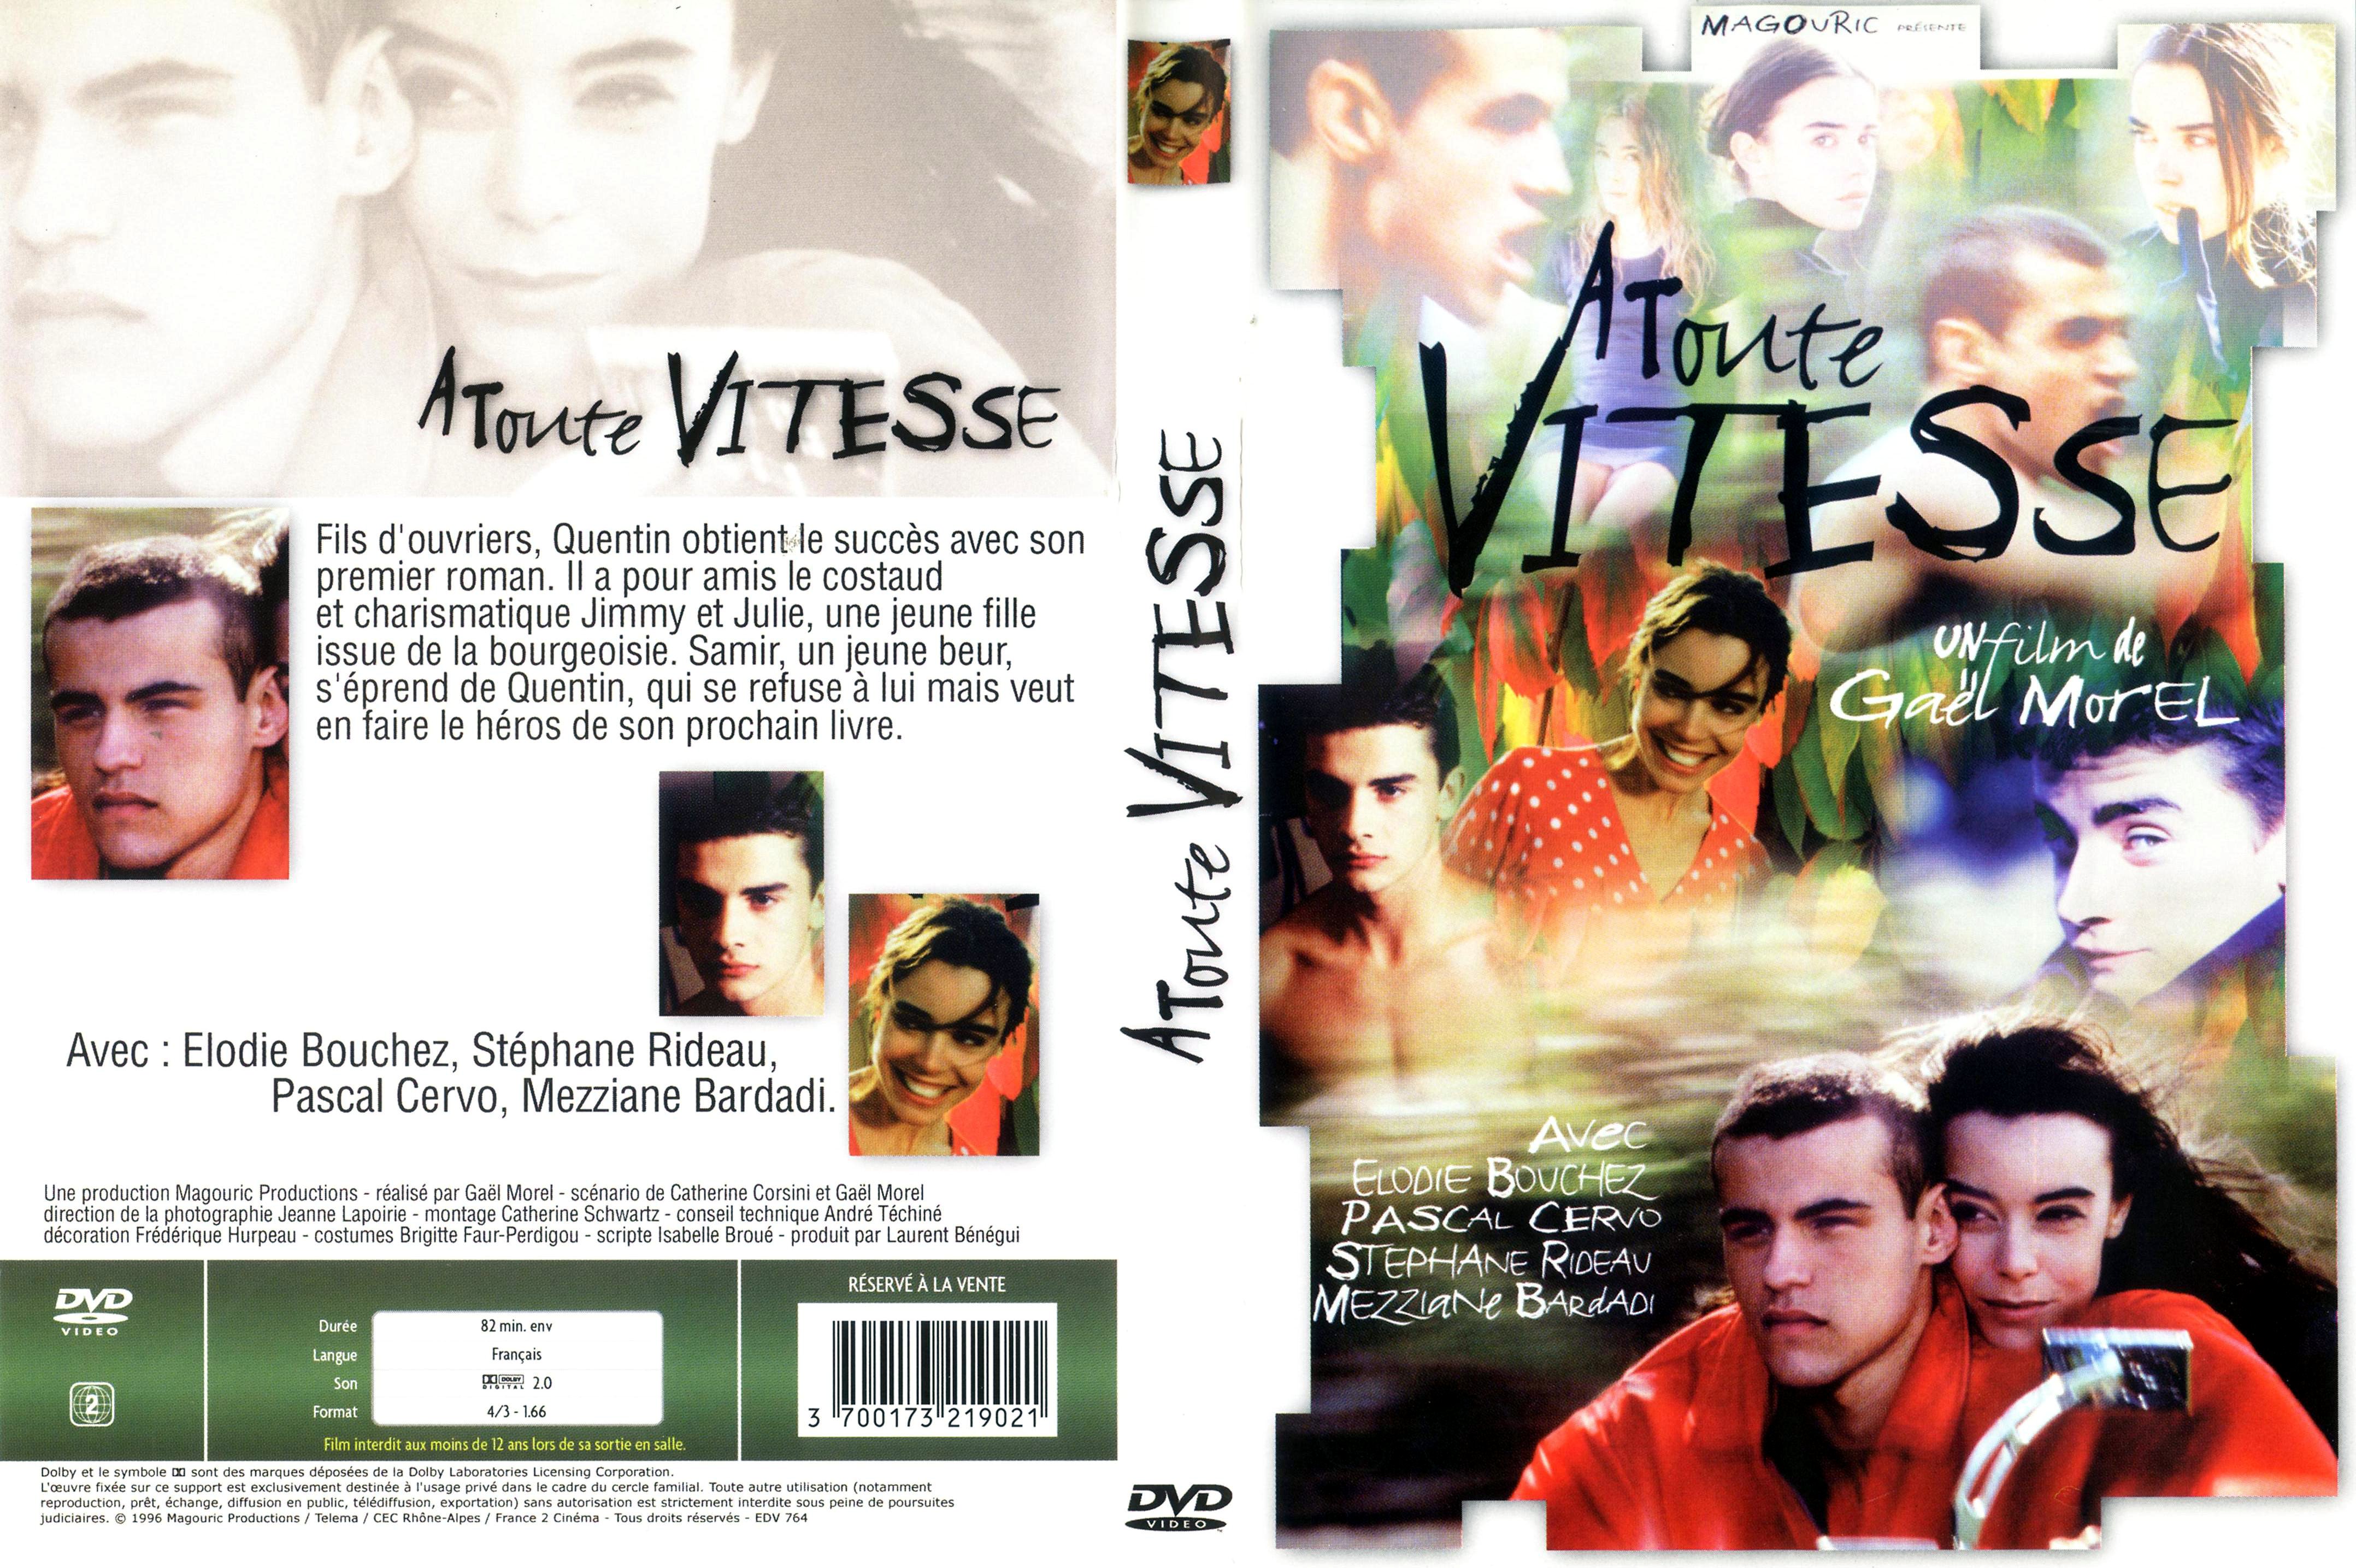 Jaquette DVD A toute vitesse (1996)